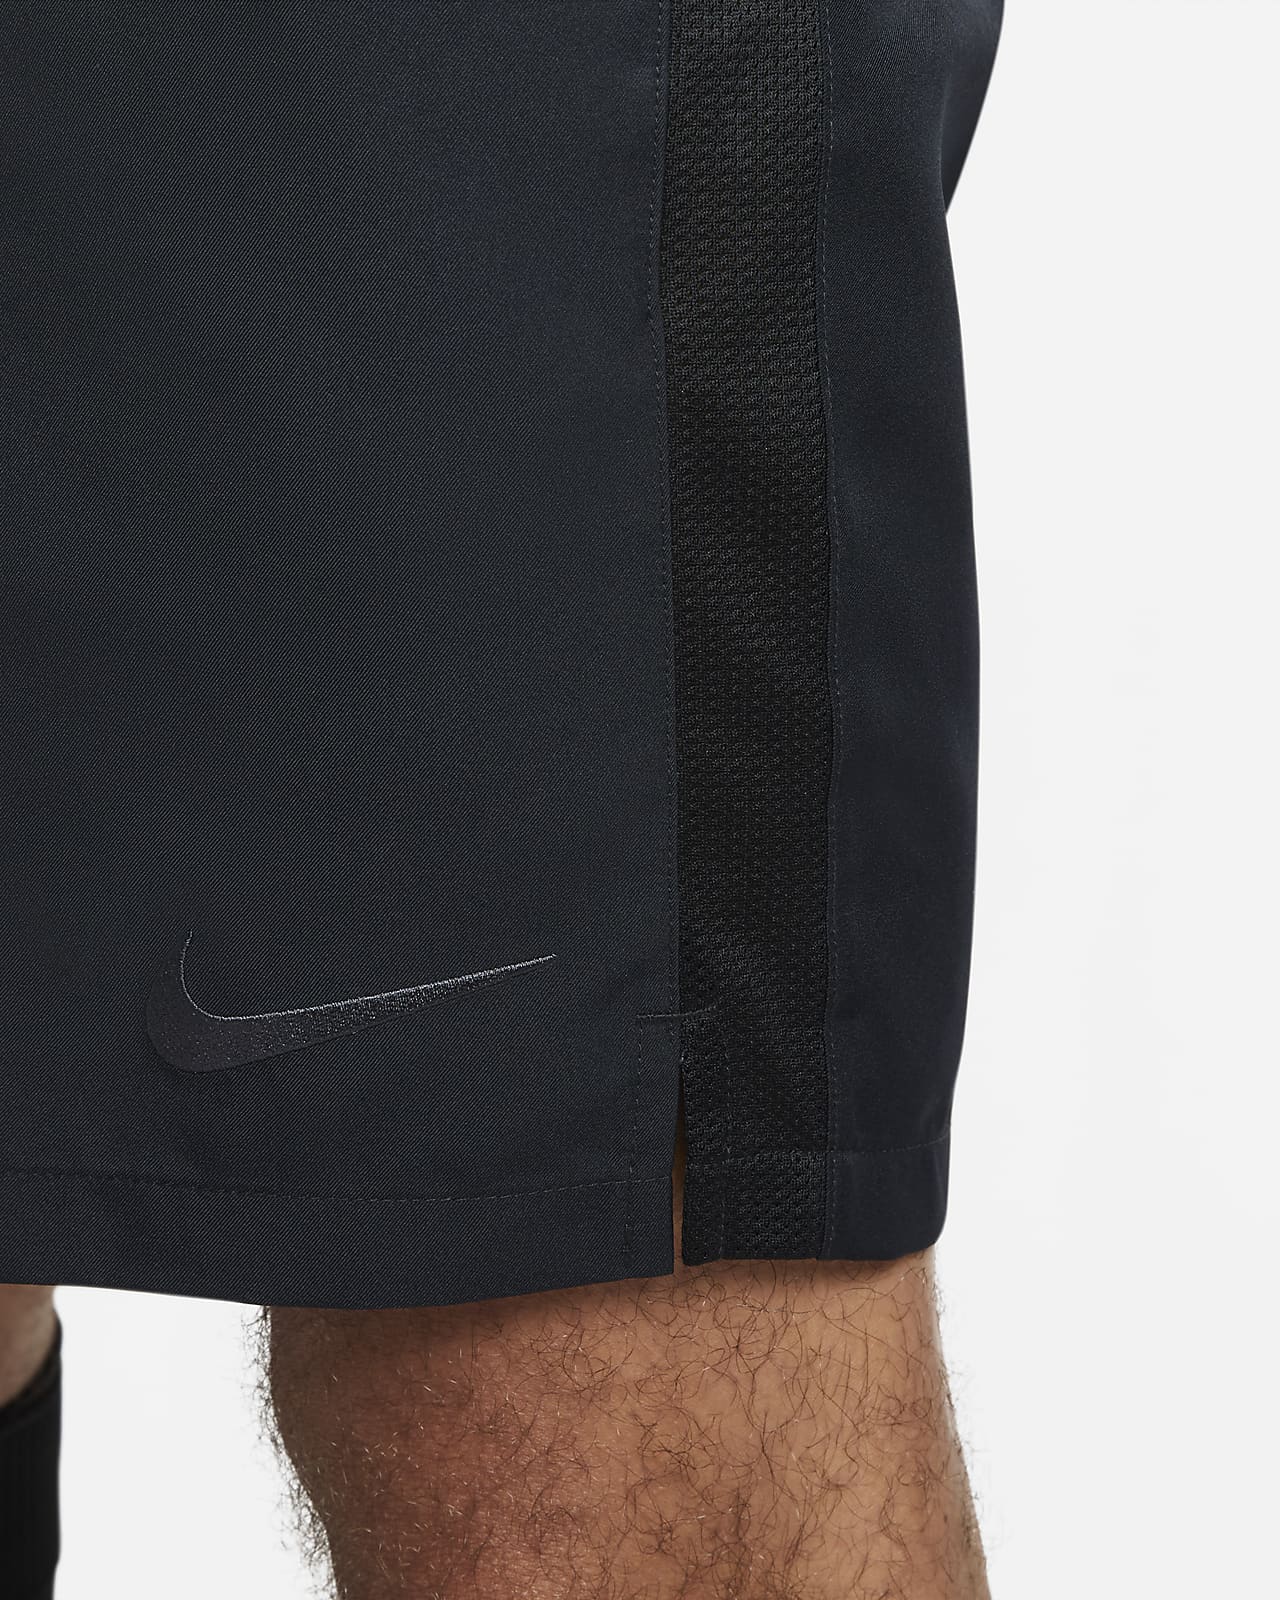 Nike Dri-FIT Referee Men's Soccer Shorts. Nike JP